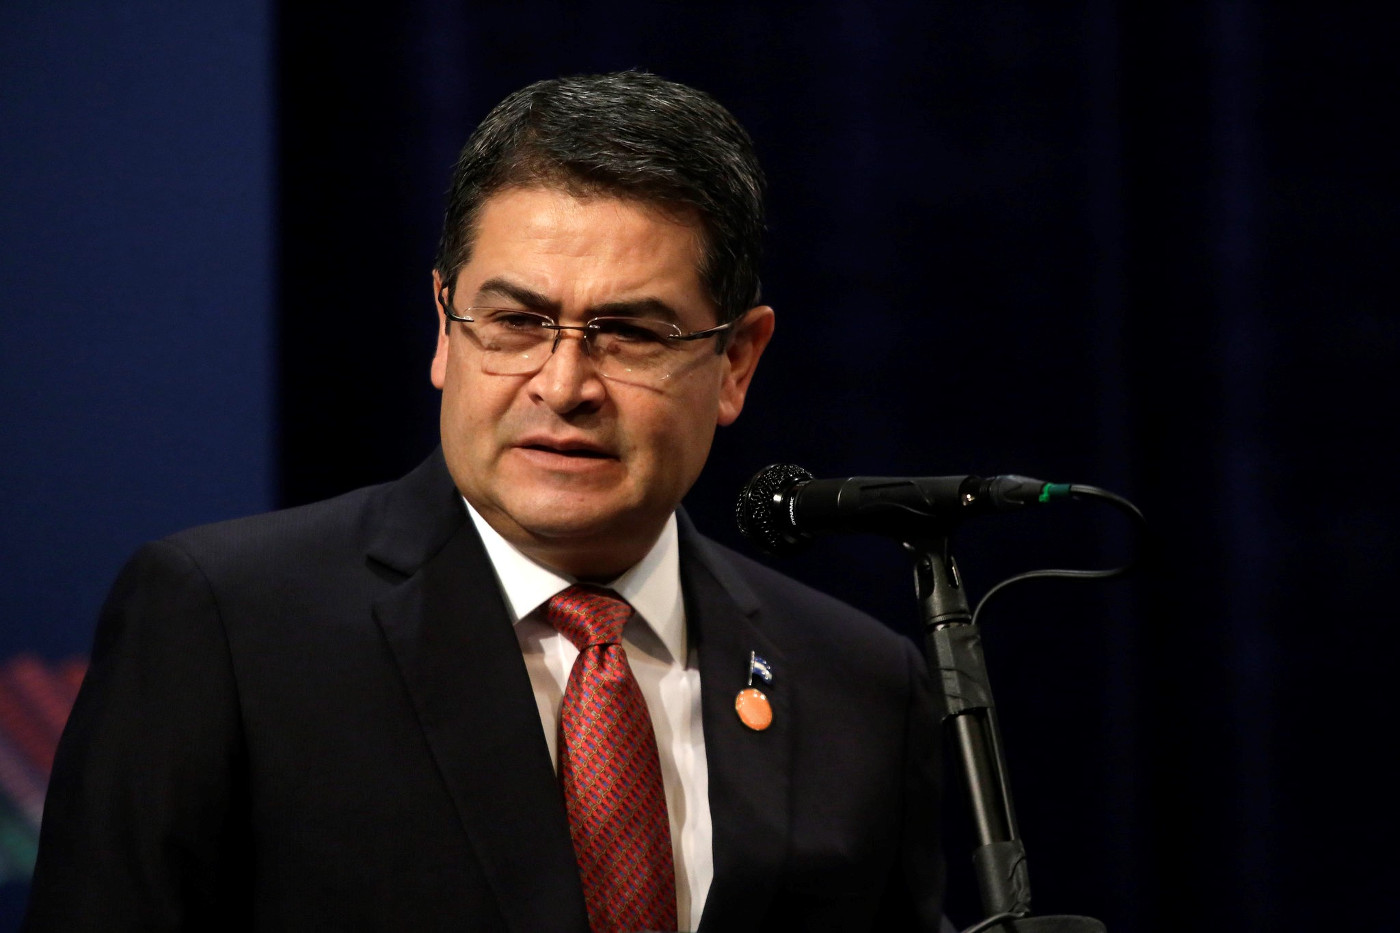 Honduras' Ex-Präsident Juan Orlando Hernández sitzt in den USA im Gefängnis. Ihm wird Drogenschmuggel, Waffenhandel und Korruption vorgeworfen. Foto: Flickr, CCO1.0